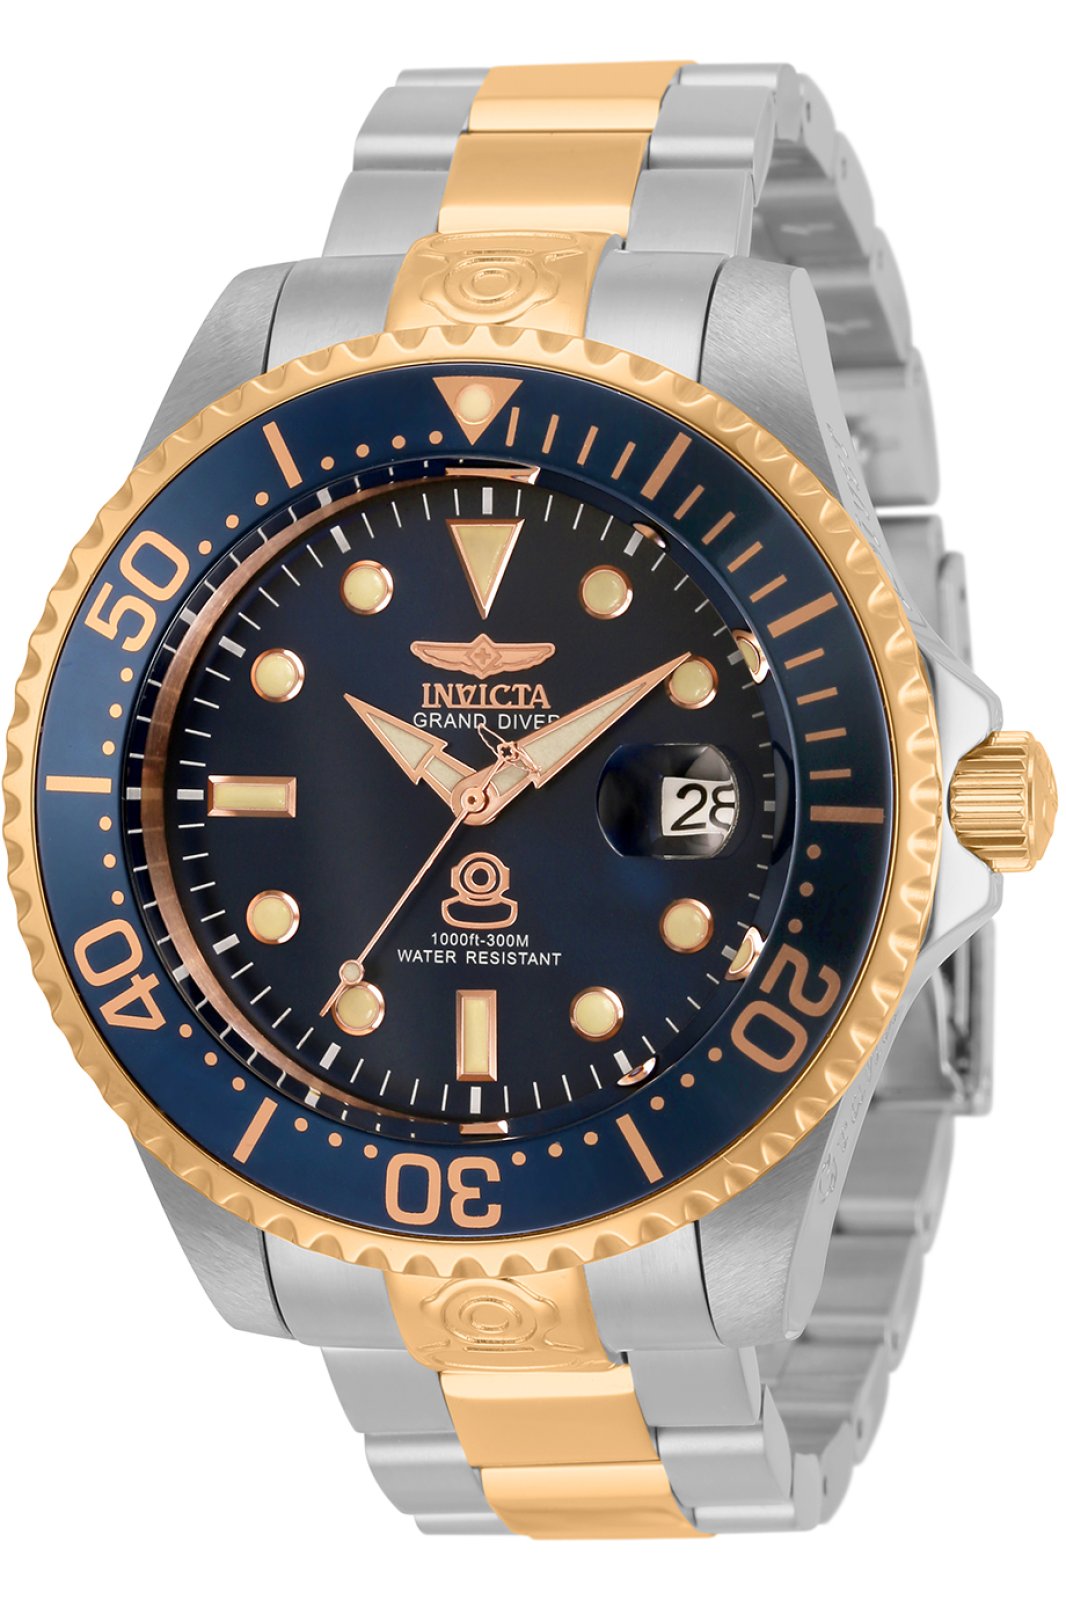 Invicta Grand Diver 33315 Men's Automatic Watch - 47mm